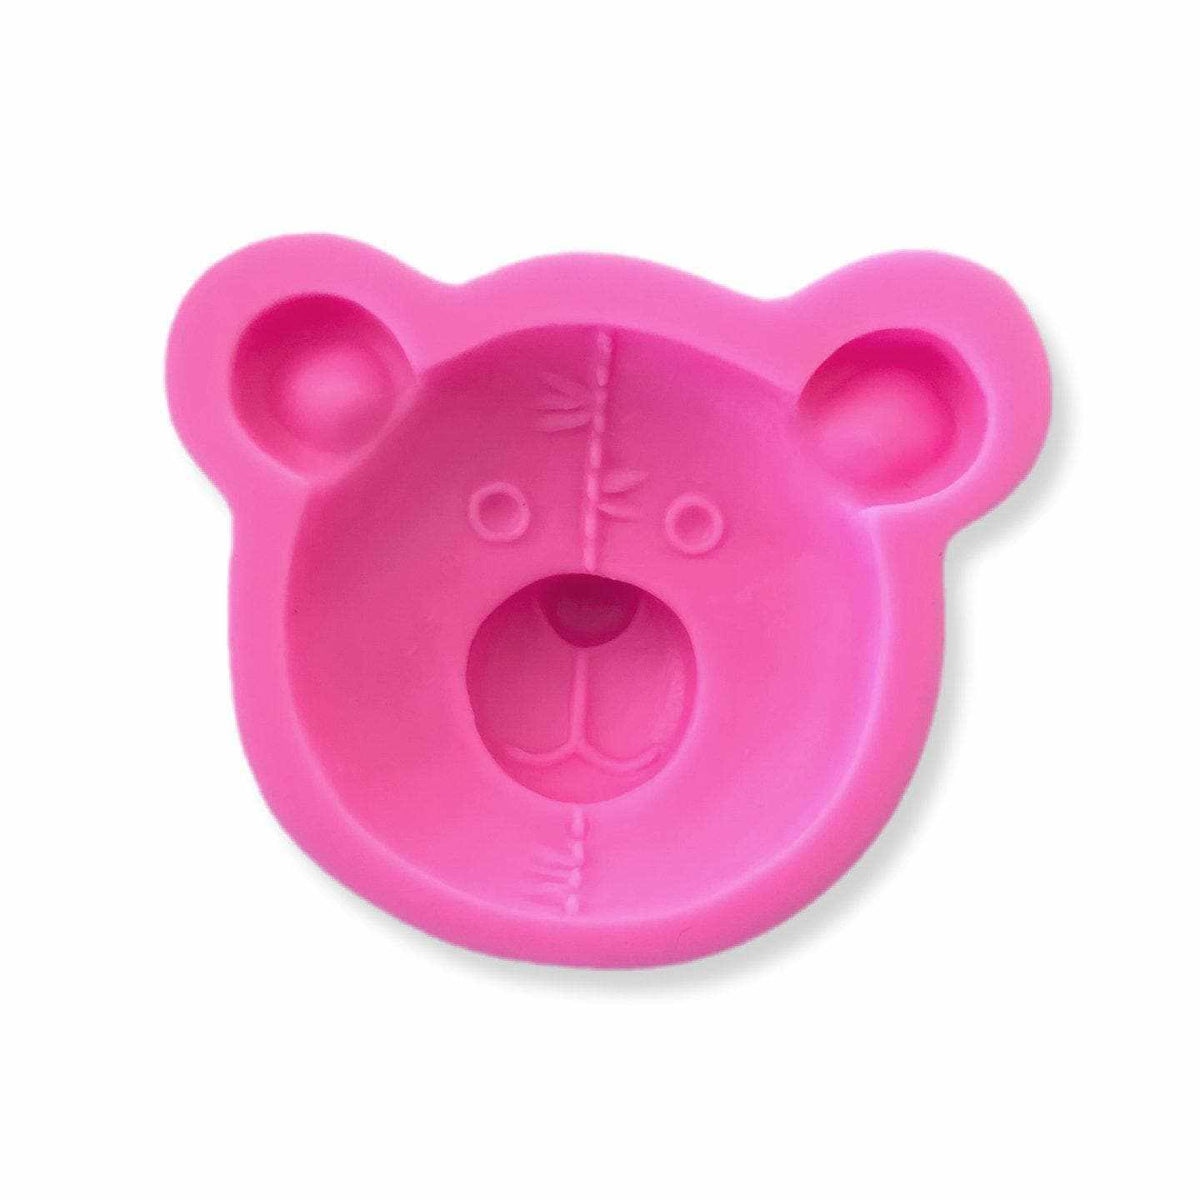 Teddy Bear Face - Silicone Mold